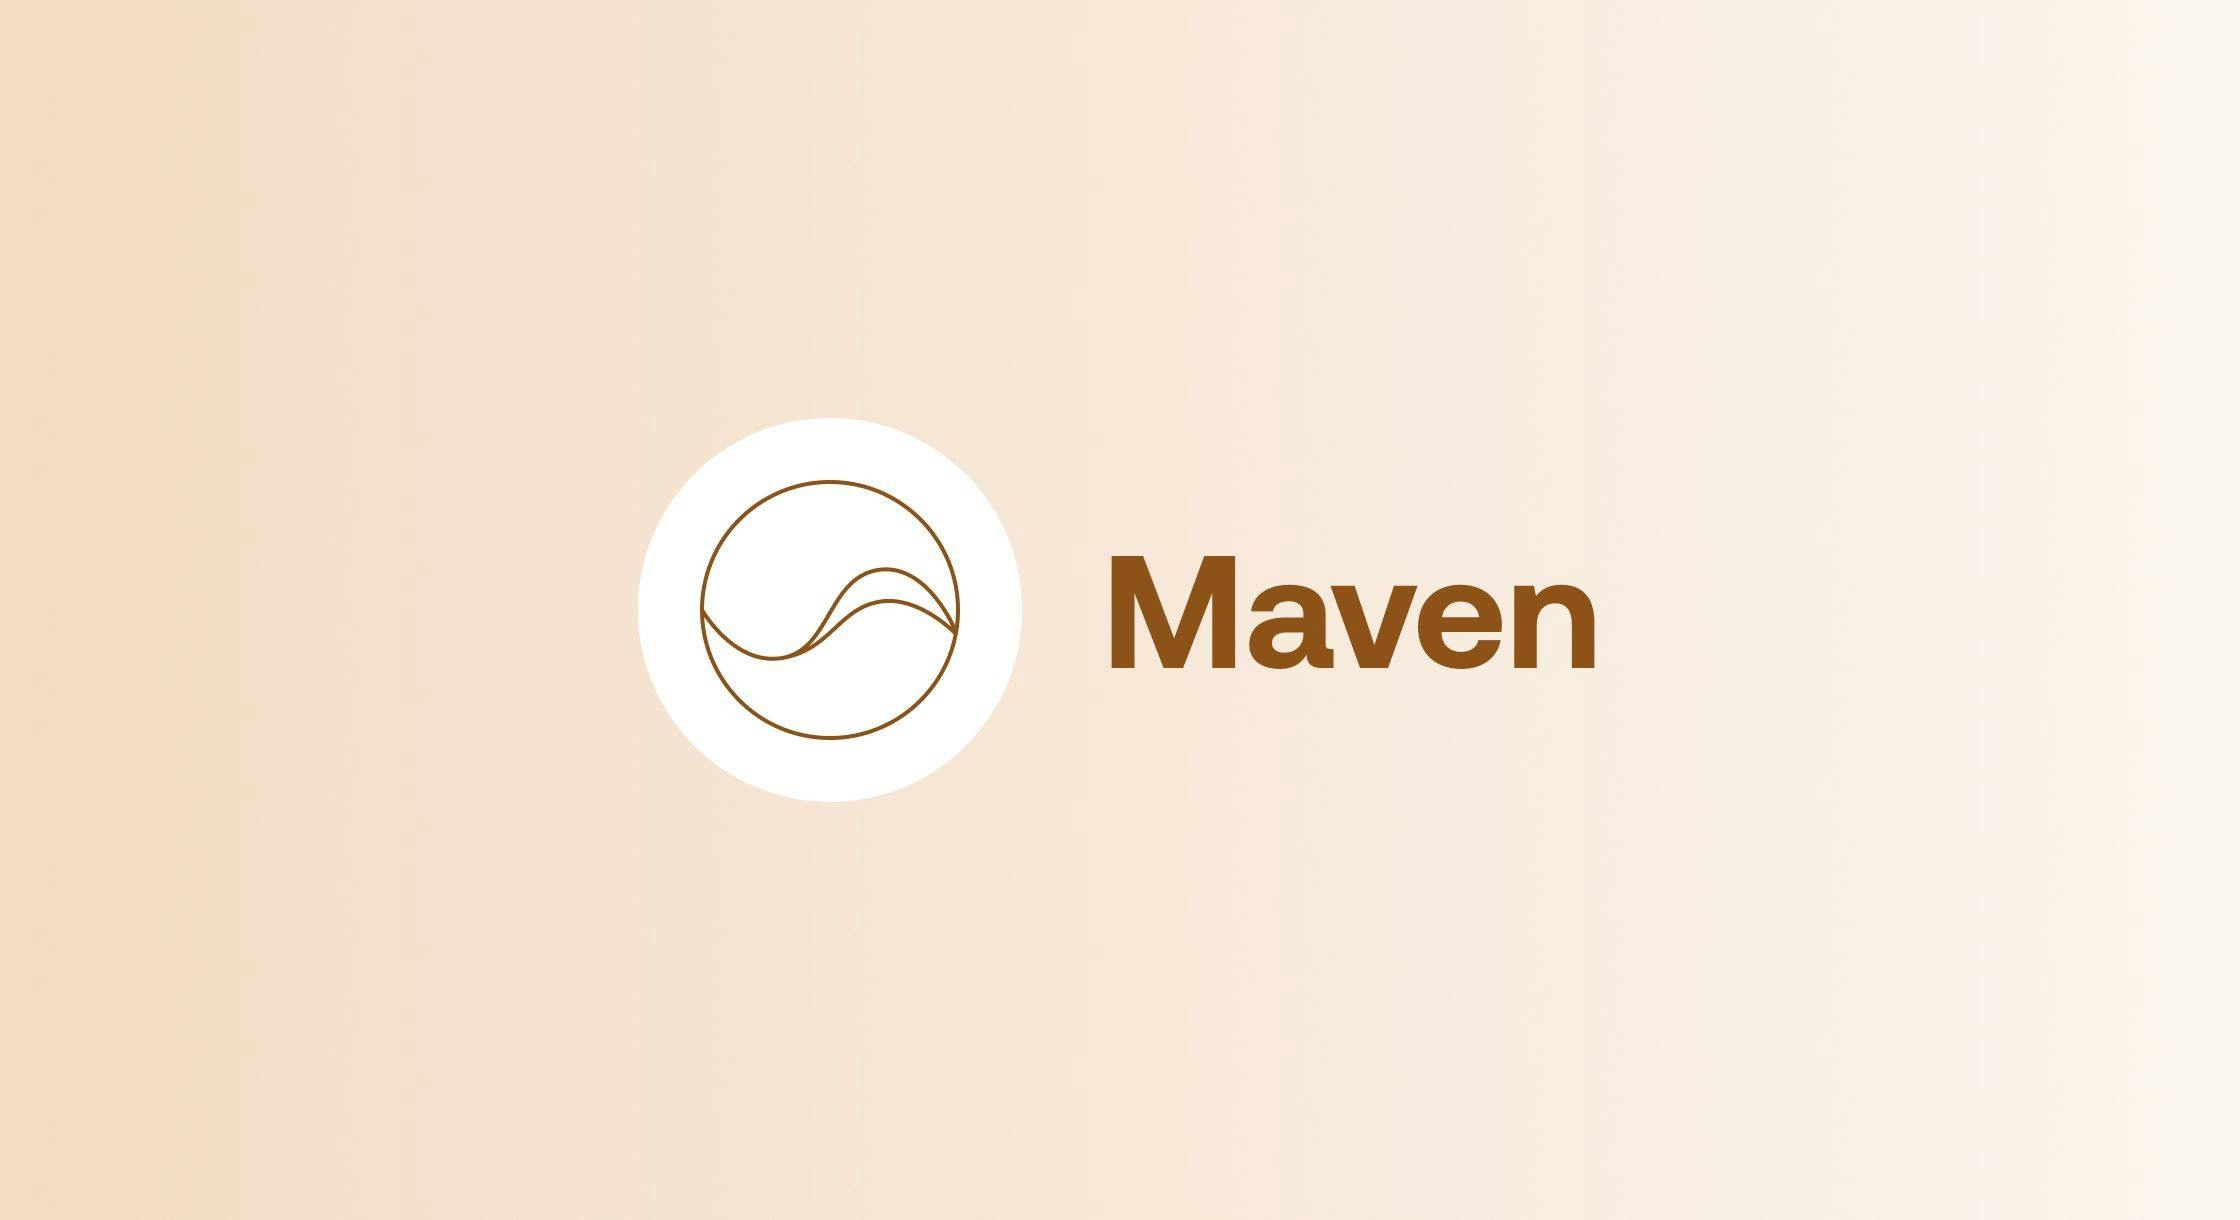 The Impact of Maven so Far